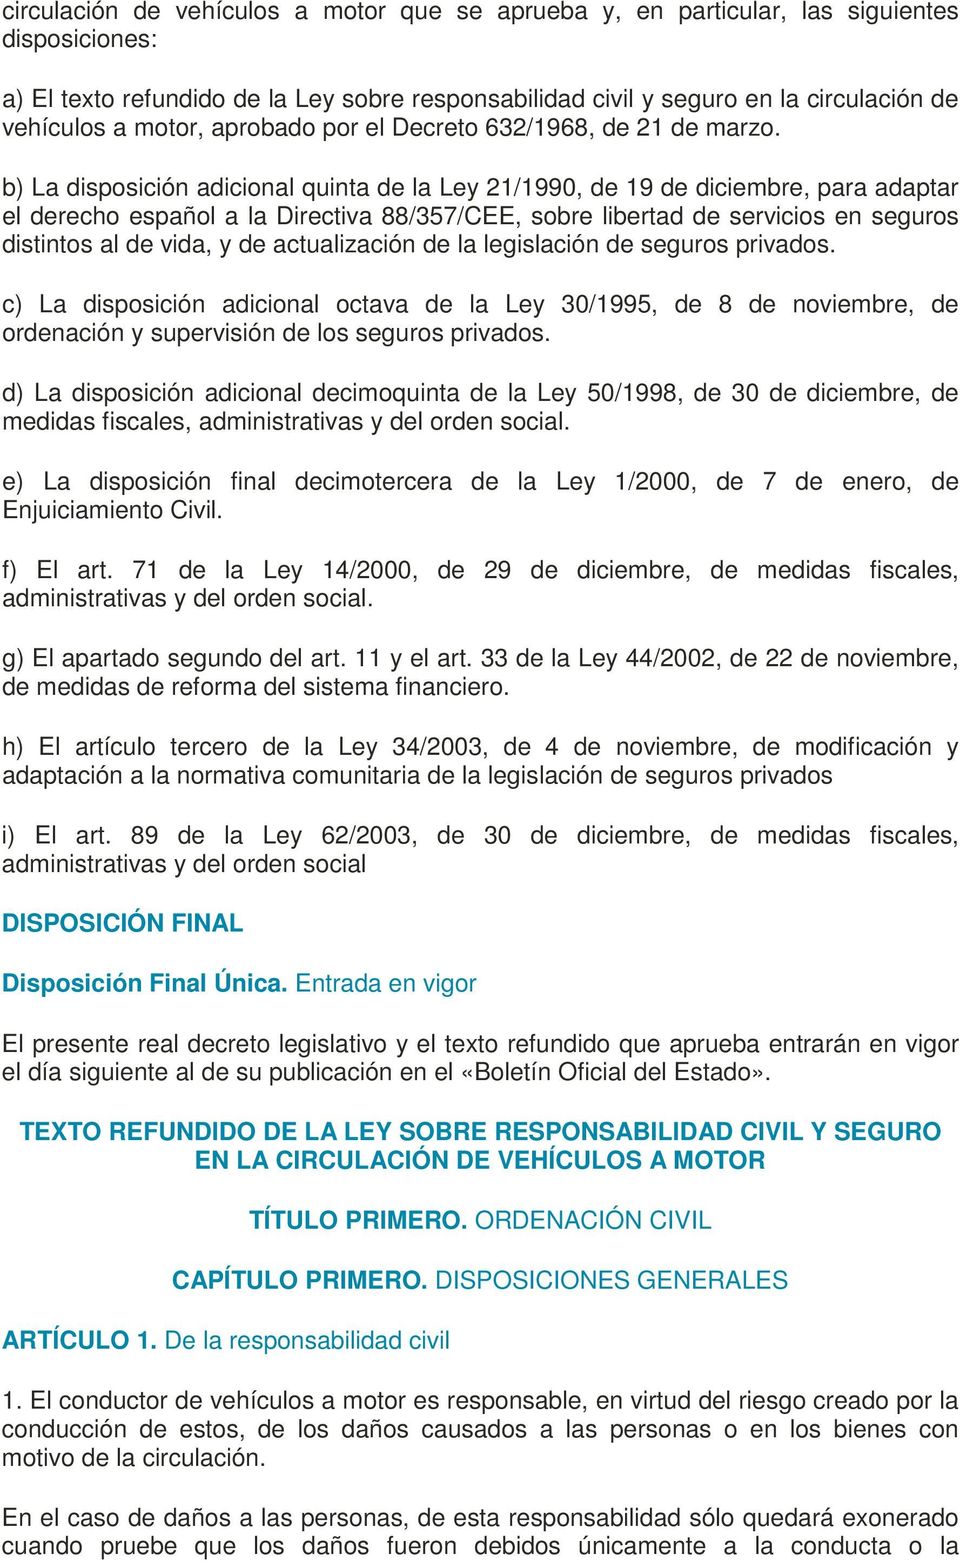 b) La disposición adicional quinta de la Ley 21/1990, de 19 de diciembre, para adaptar el derecho español a la Directiva 88/357/CEE, sobre libertad de servicios en seguros distintos al de vida, y de